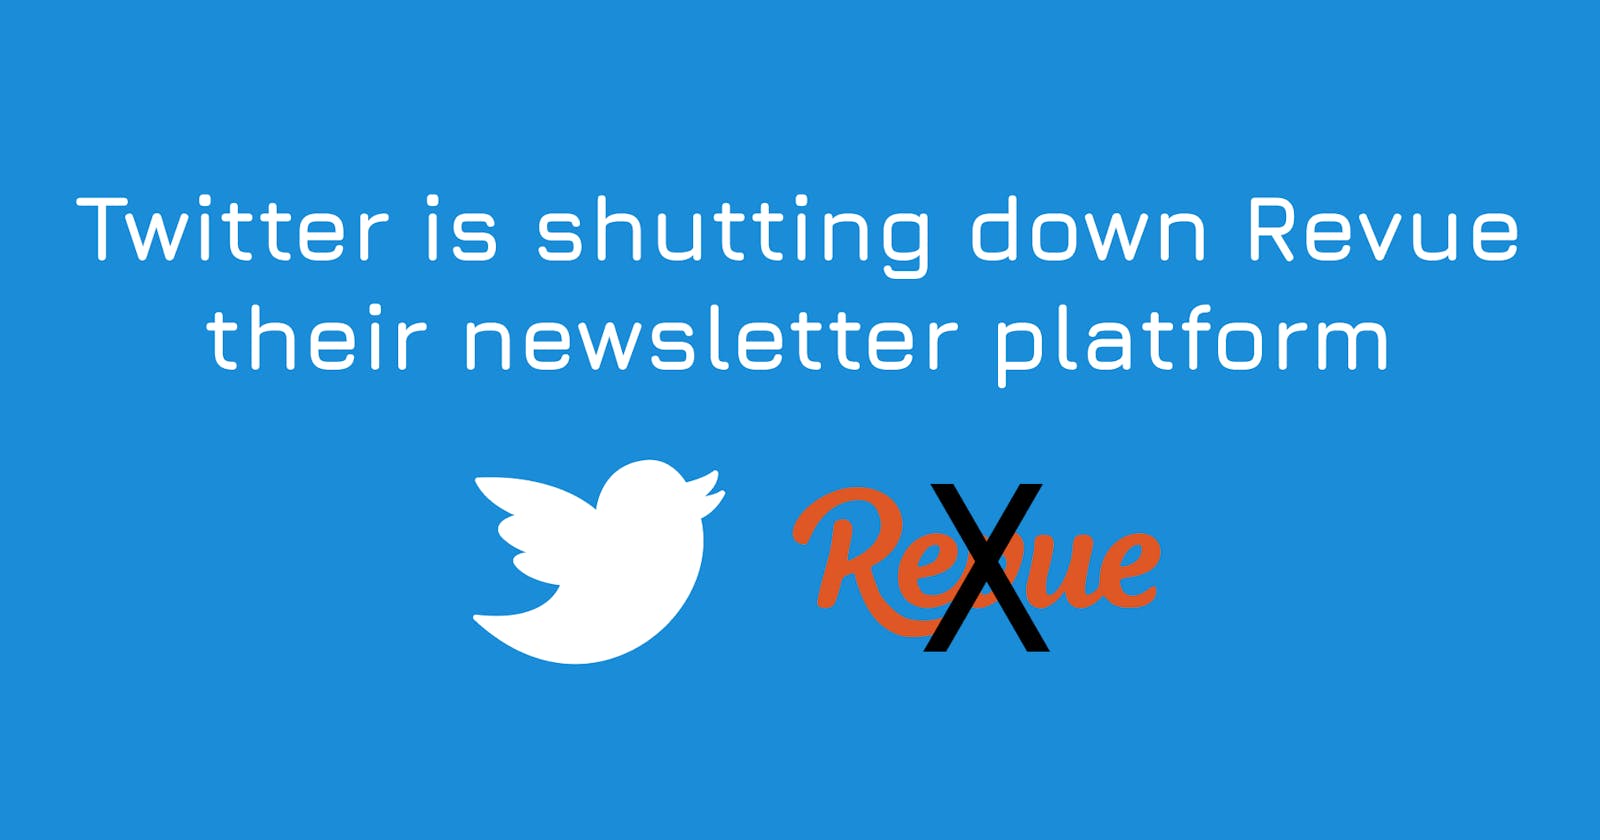 Twitter is shutting down Revue their newsletter platform